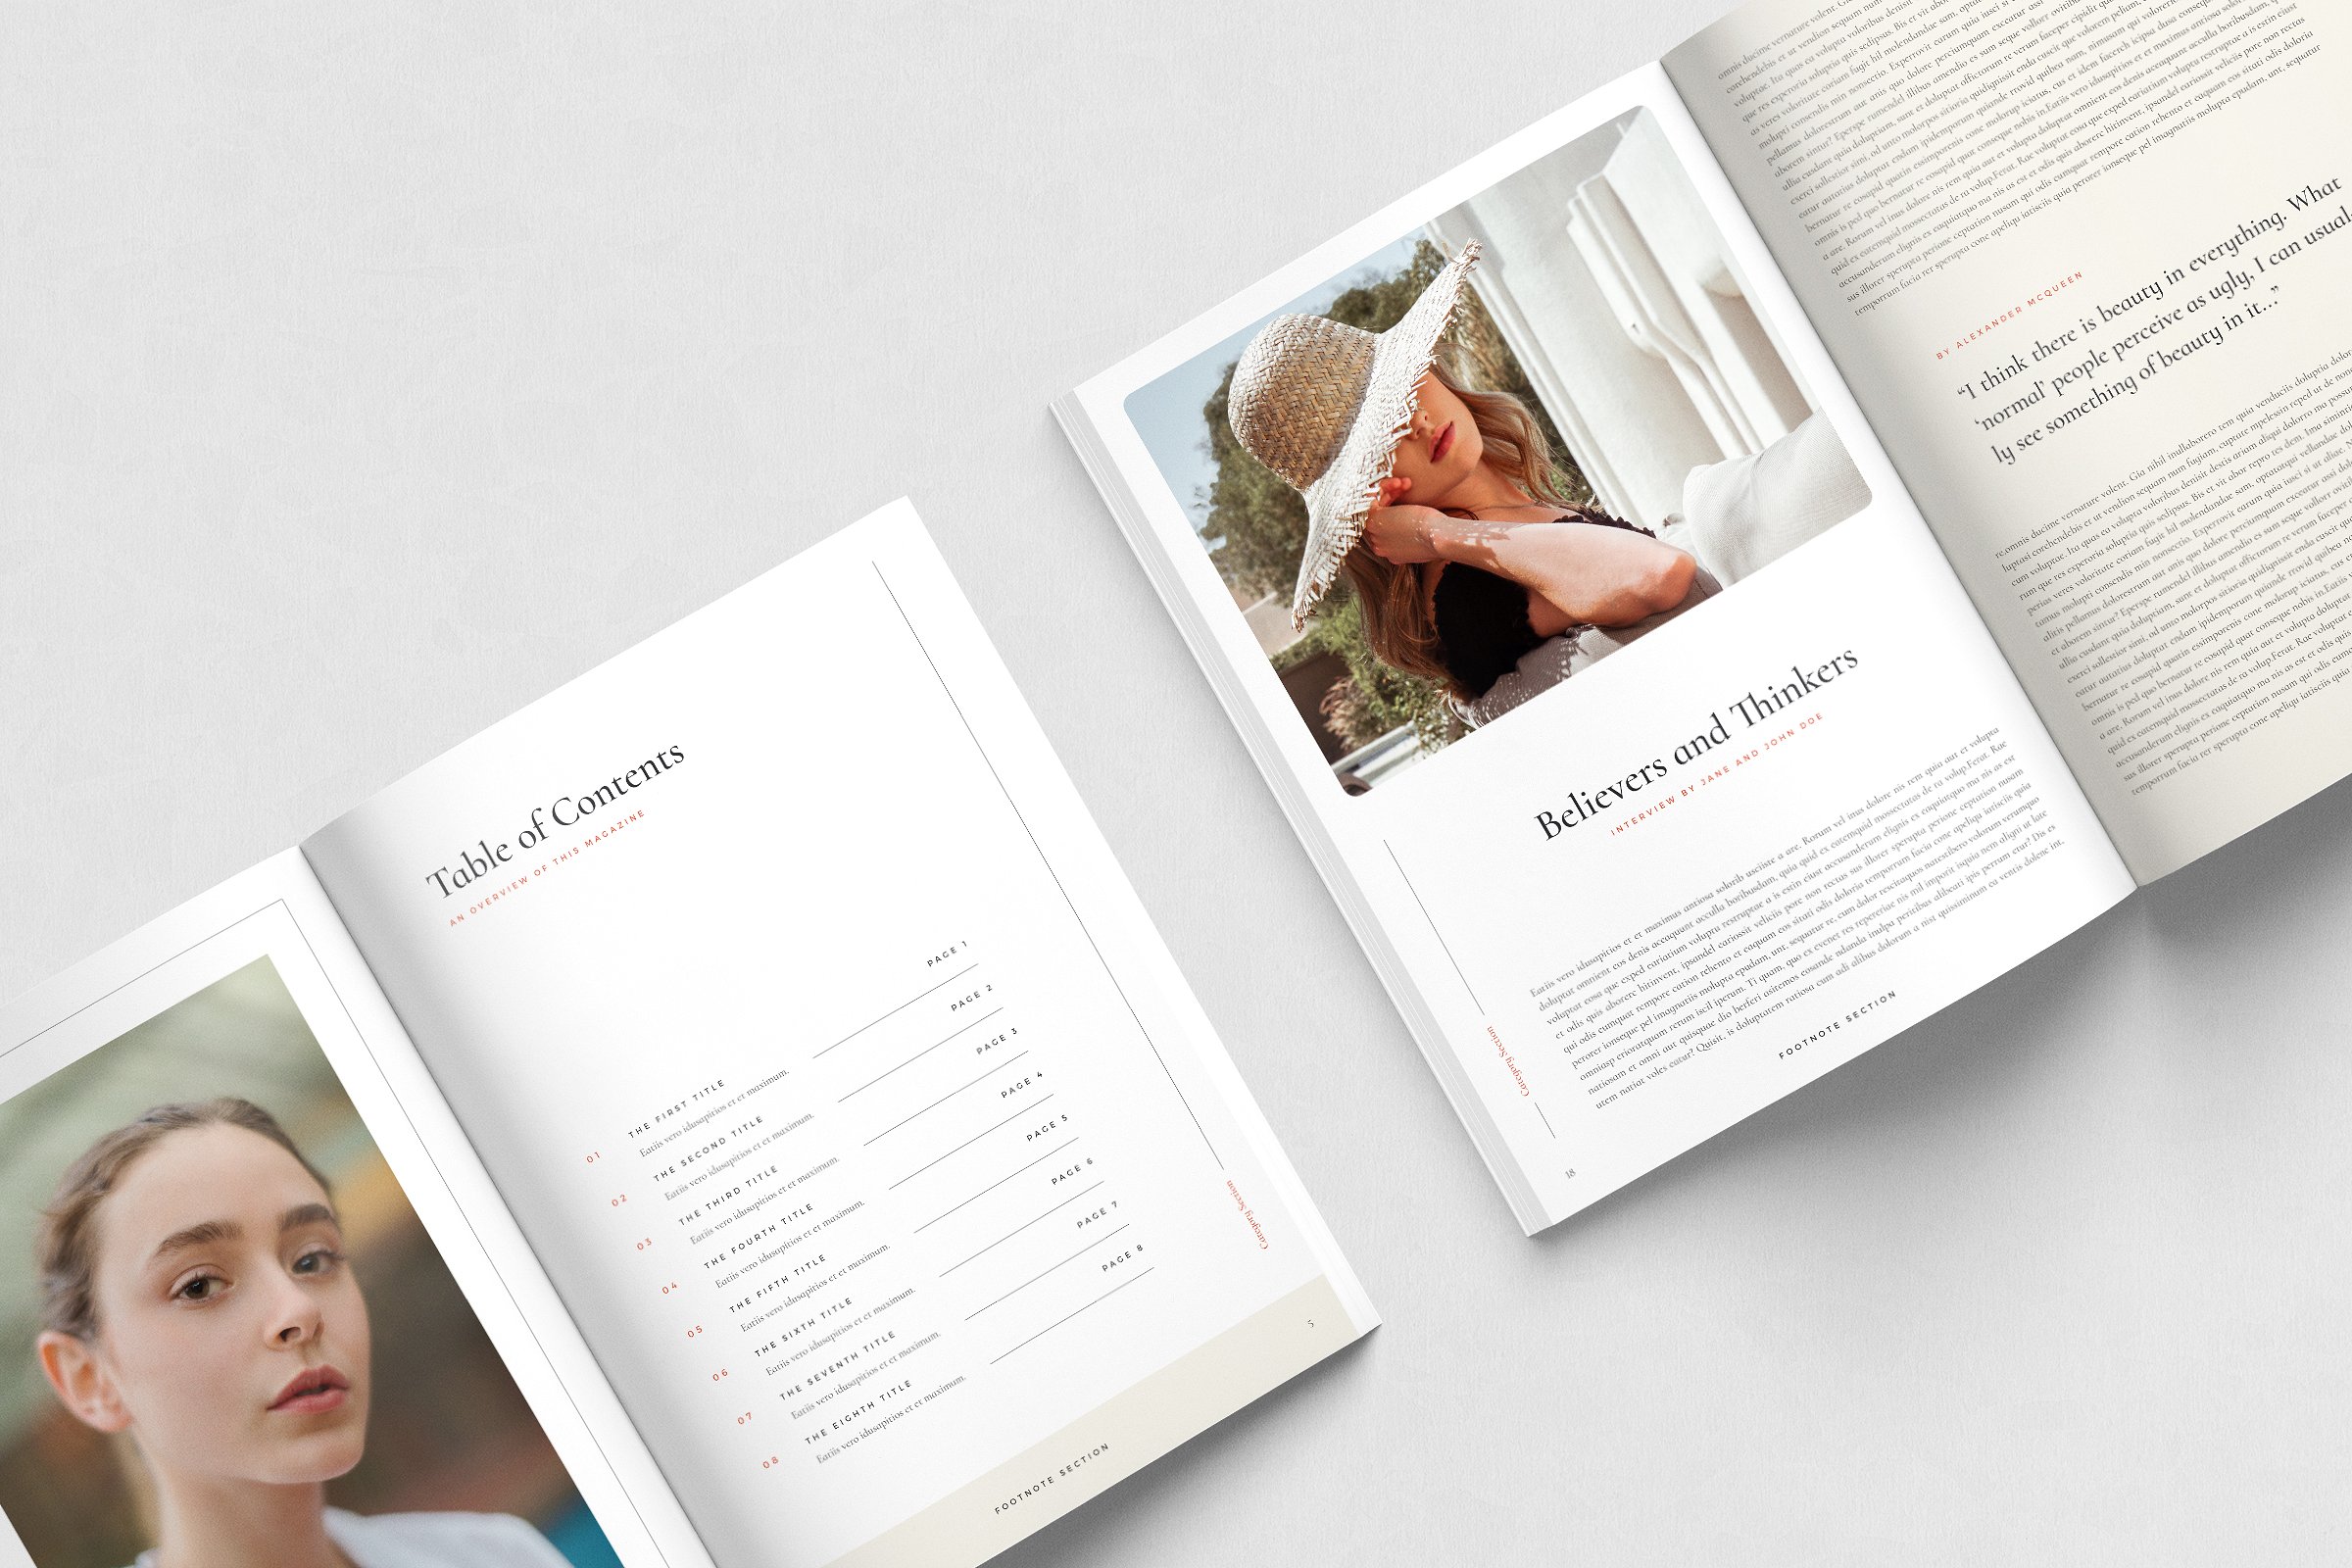 现代简约的服装品牌摄影宣传册模板 Modern Minimalist Clothing Brand Photography Brochure Template插图6